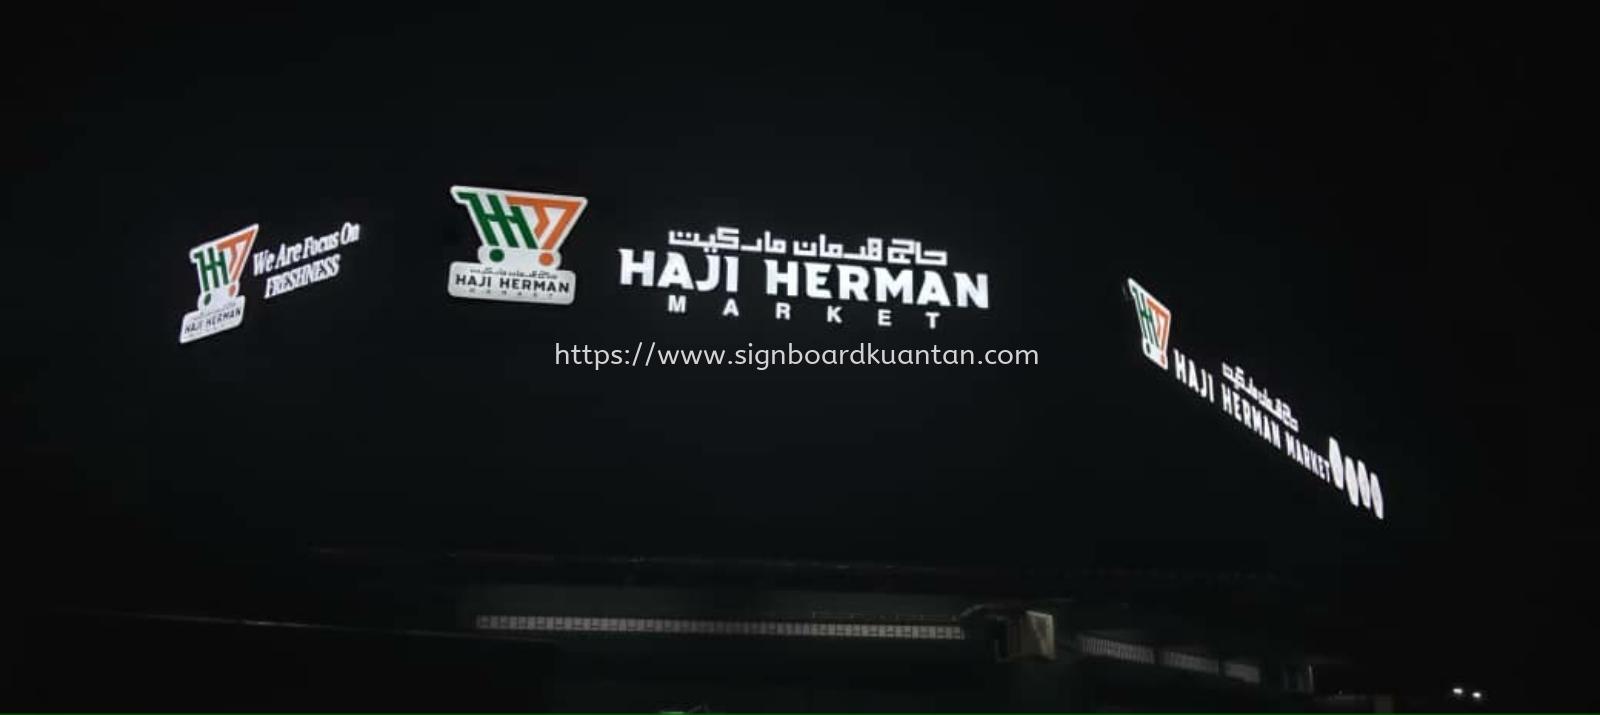 HAJI HERMAN MARKET OUTDOOR ALUMINIUM PANEL 3D LED FRONTLIT BOX UP SIGNAGE SIGNBOARD AT KUANTAN INDERA MAHKOTA